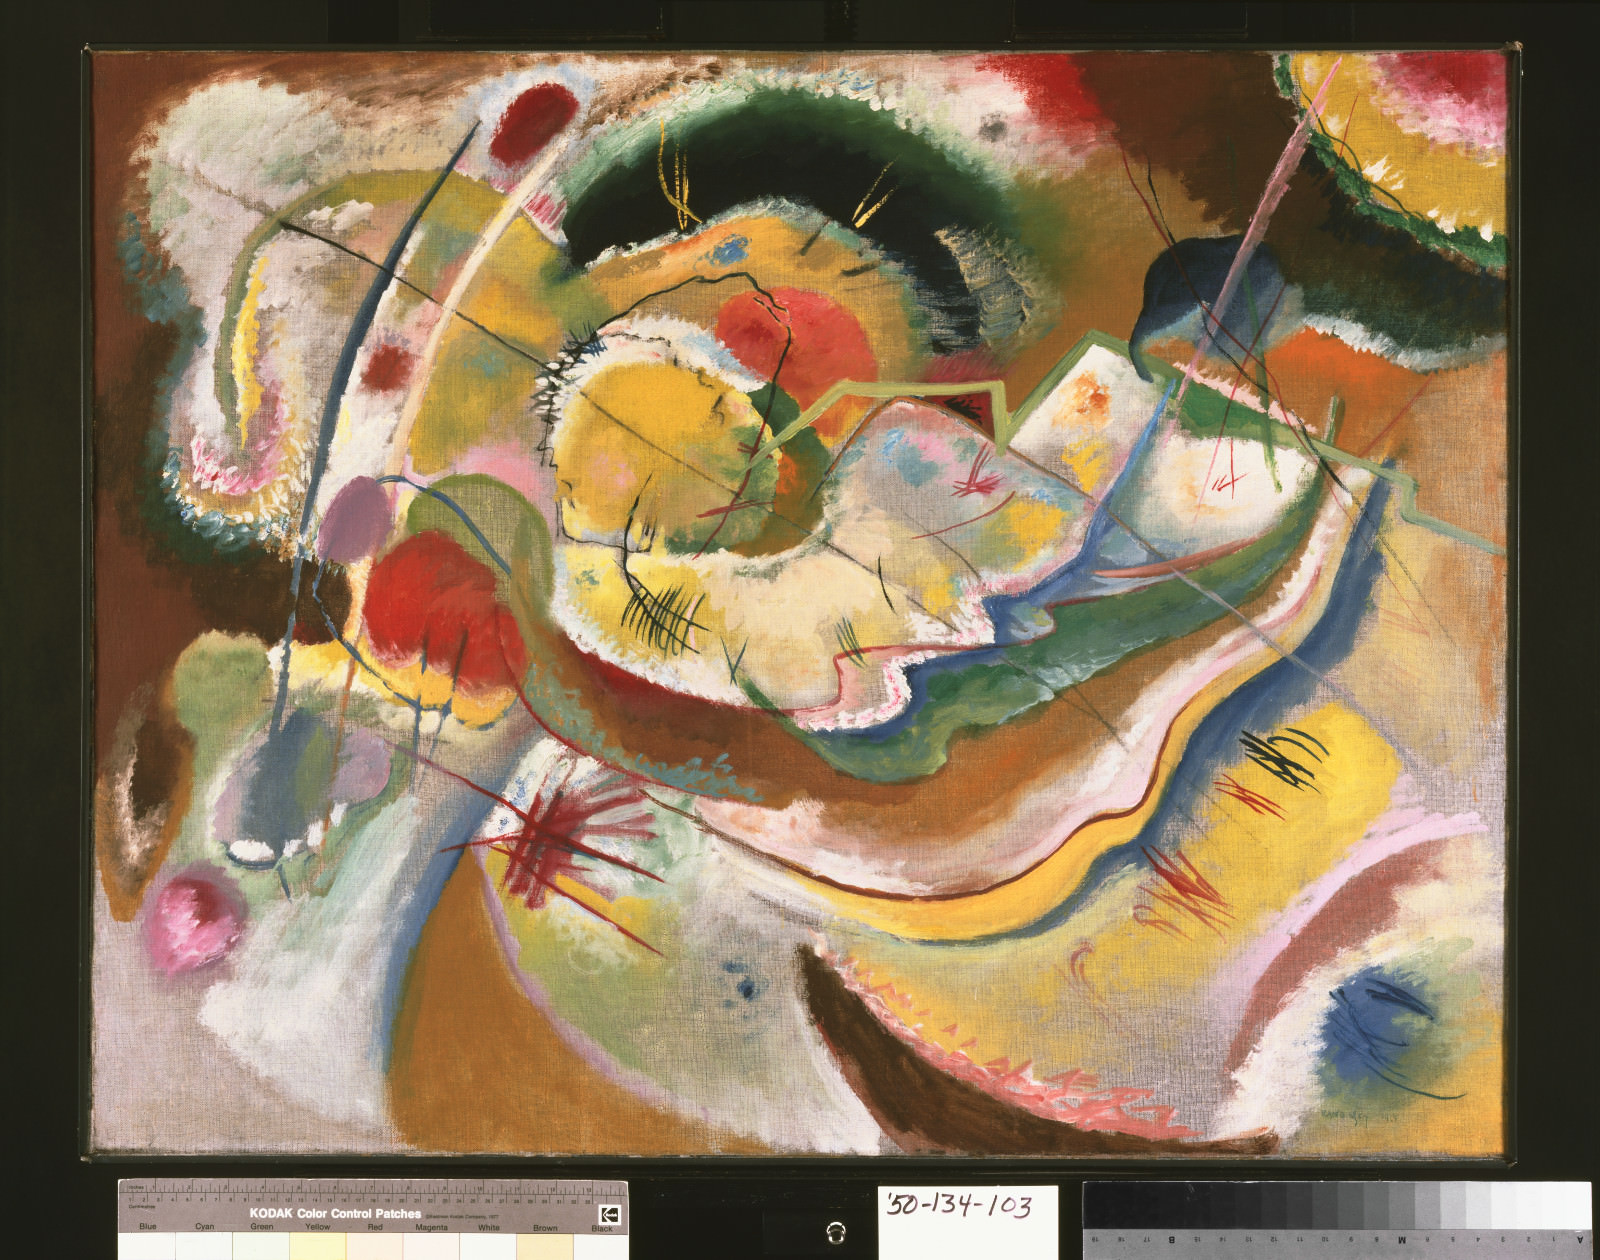 Fico. 4 - Vasily Kandinsky, Piccola pittura con colore giallo (improvvisazione), 1914, olio su tela, 31 x 39 5/8 polegadas (78.7 x 100.6 cm) incorniciato: 32 3/4 x 41 1/2 x 2 1/pollicias (83.2 x 105.4 x 6.cmcm). Philadelphia Museum of Art, Il Louise e Walter Arensberg Collection, 1950-134-103.